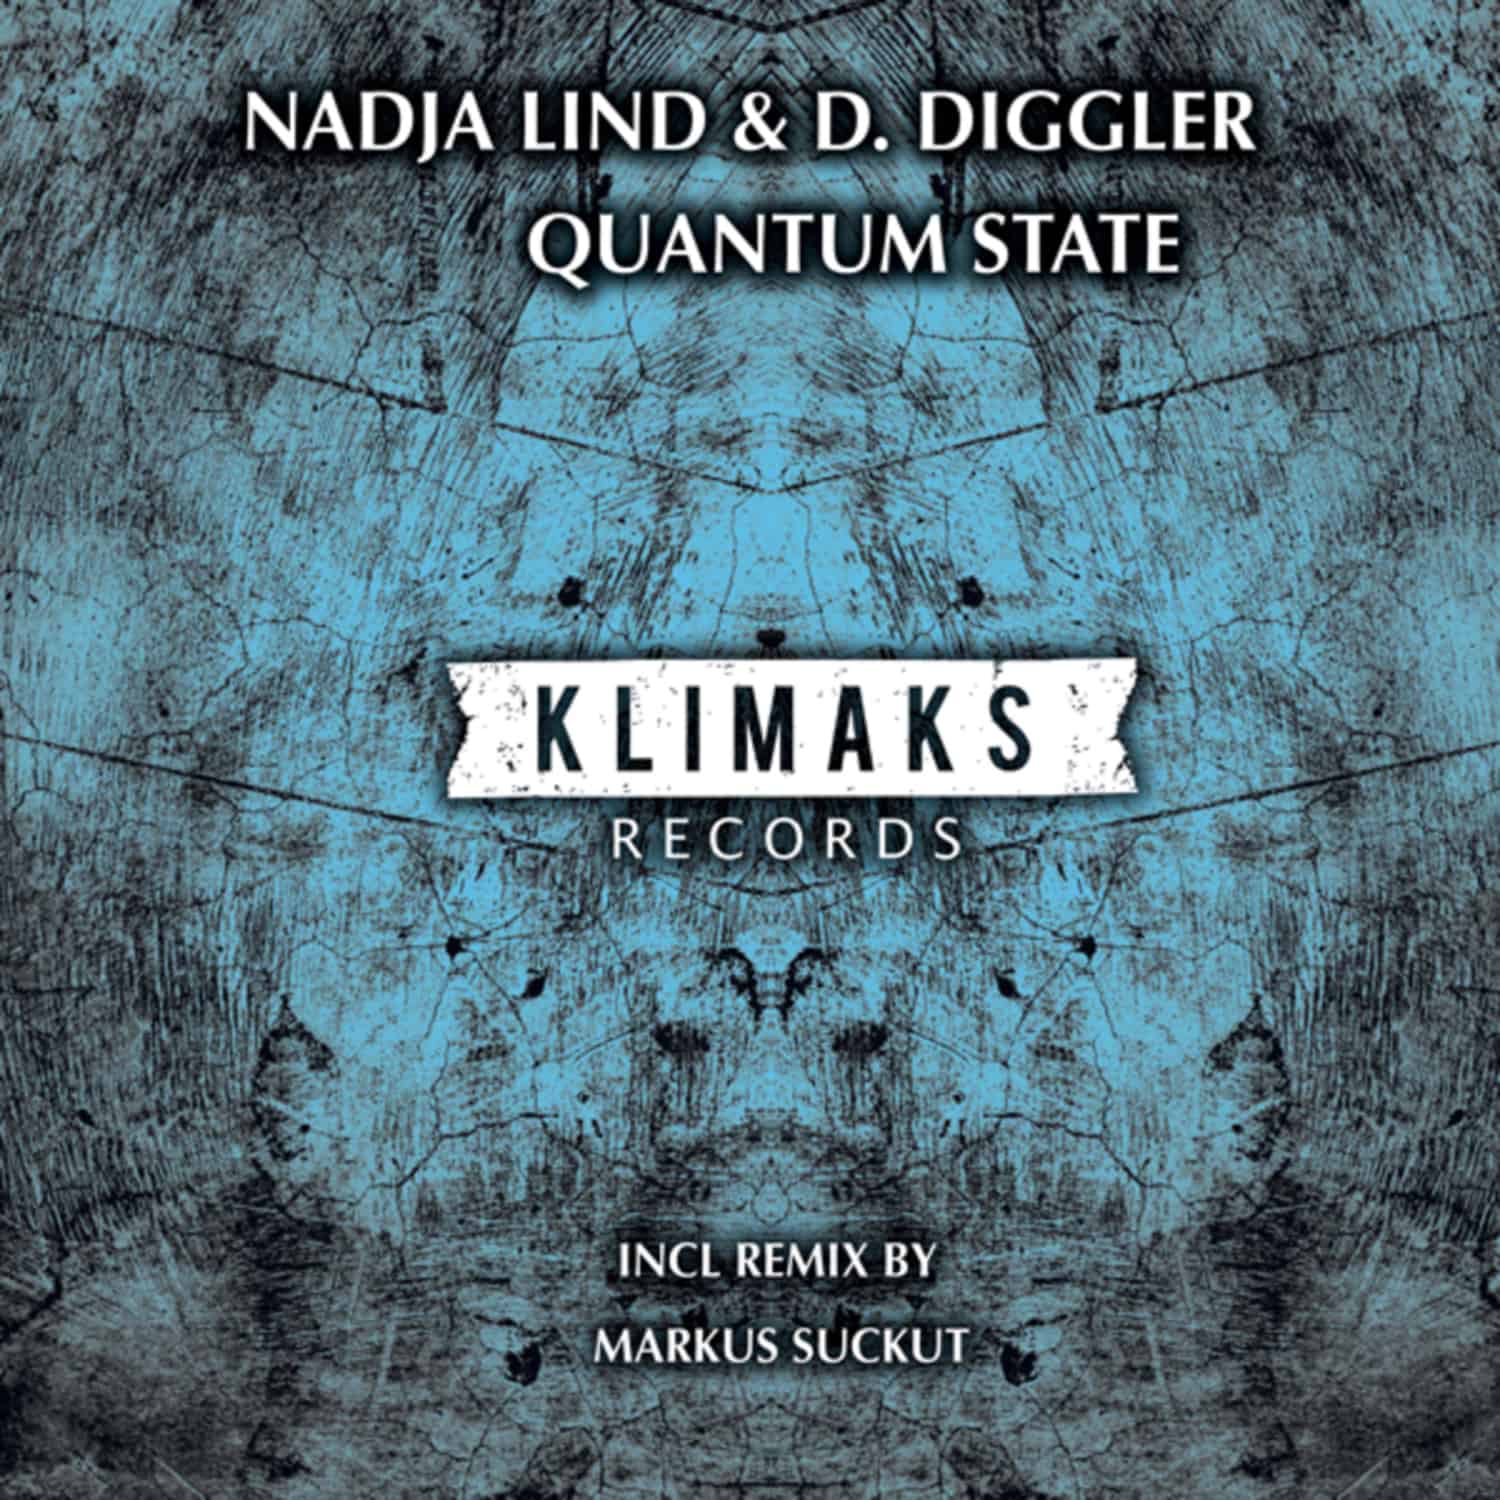 Nadja Lind & D. Diggler - QUANTUM STATE 